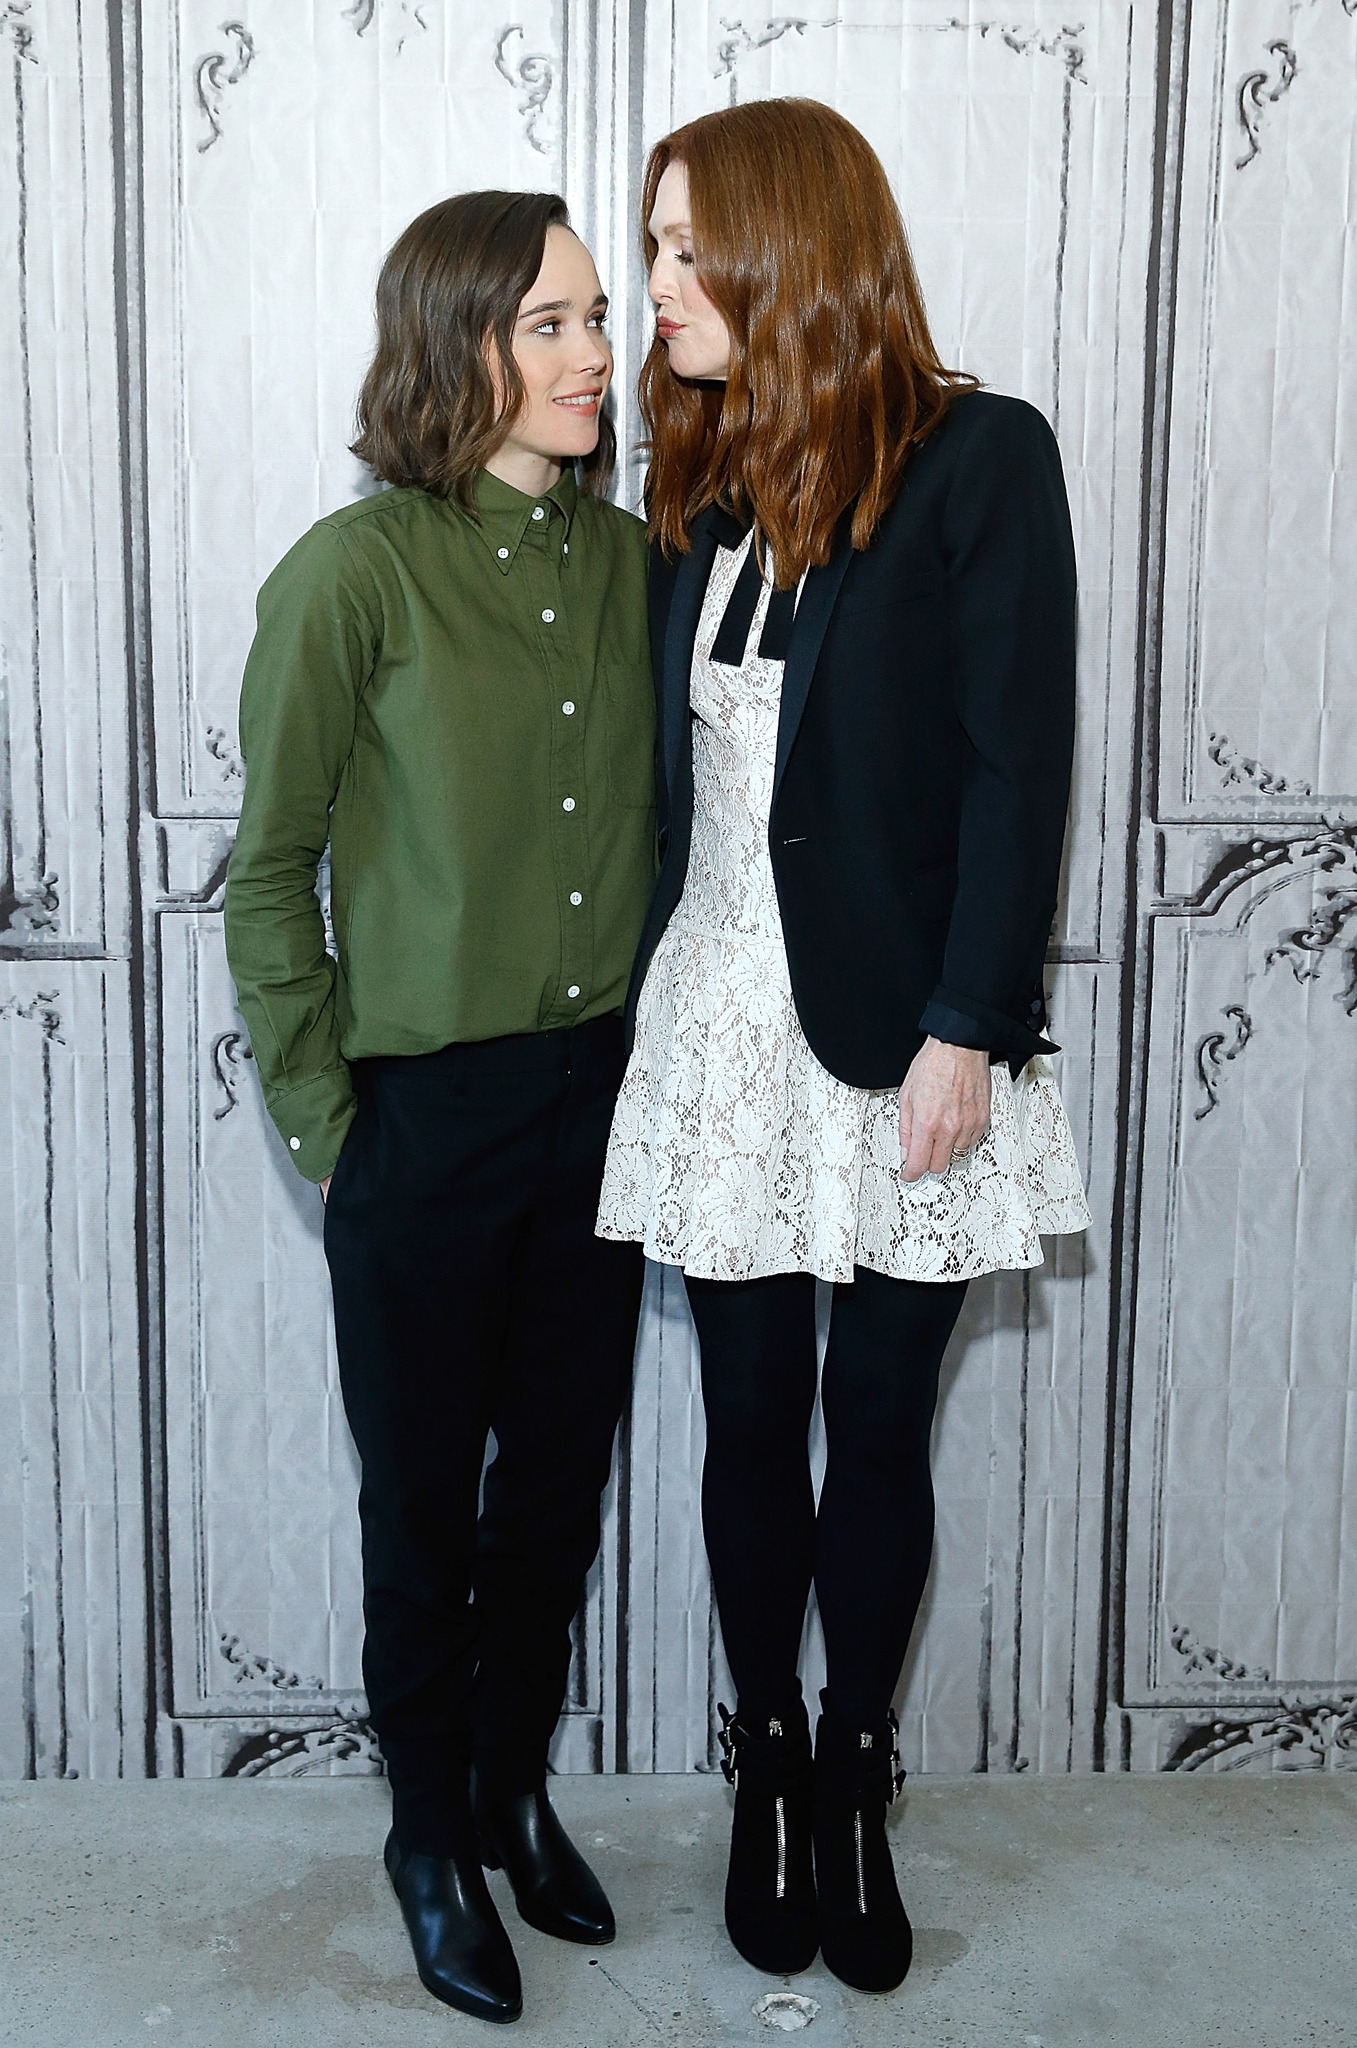 Julianne Moore and Ellen Page